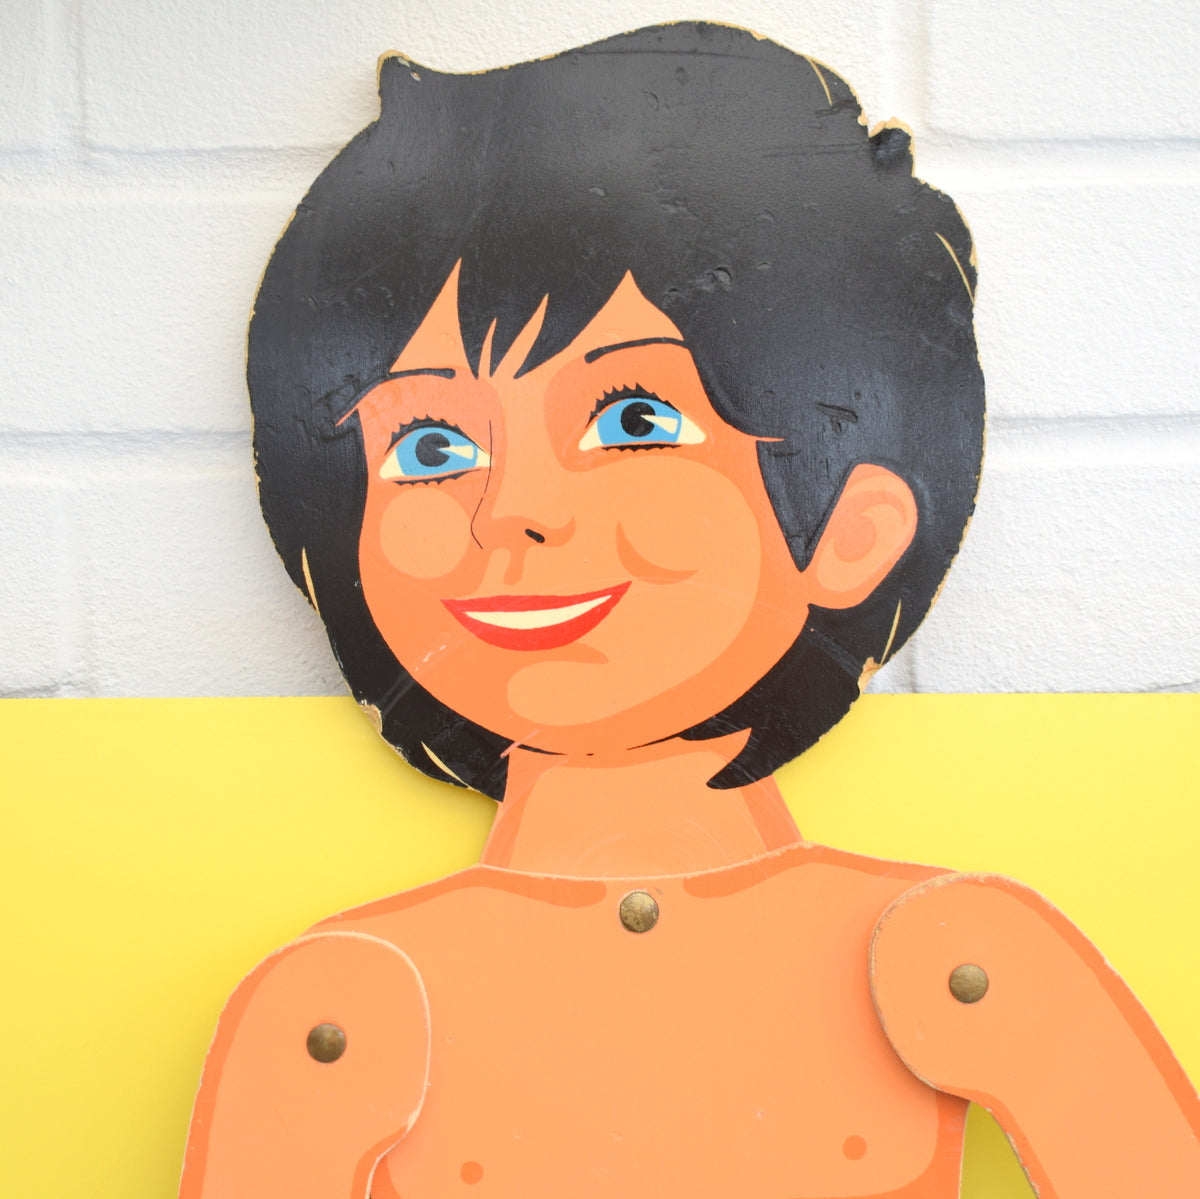 Vintage 1970s Kids Mannequin / Display - Painted Plywood